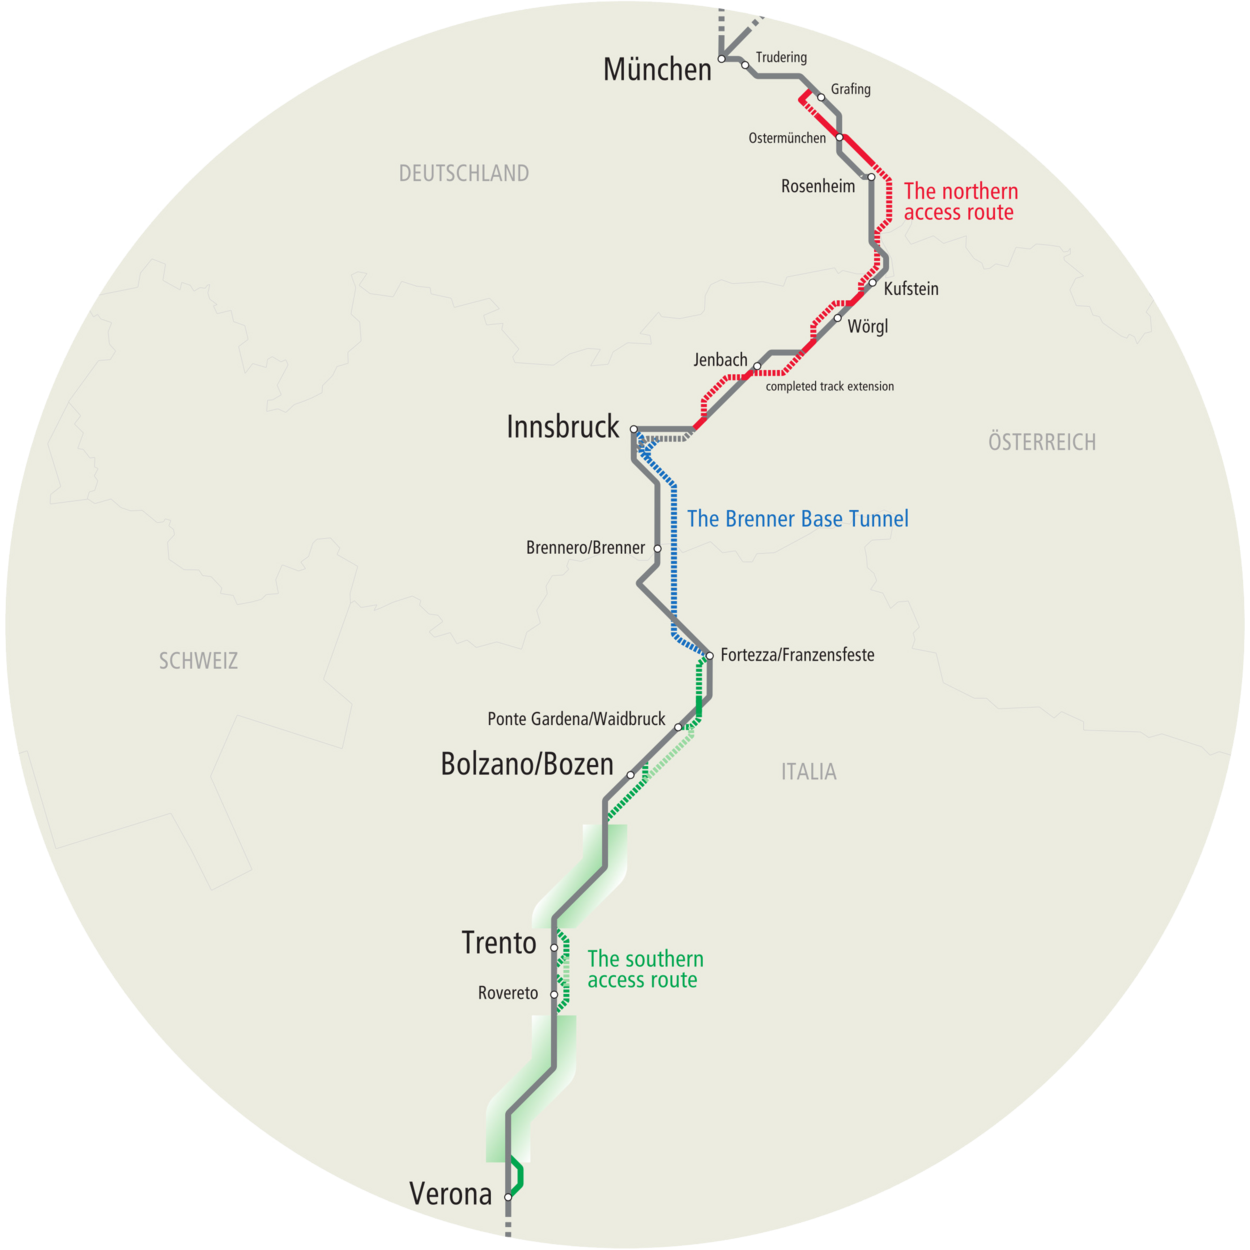 Übersicht zum Ausbau der Schieneninfrastruktur im Korridor München-Verona